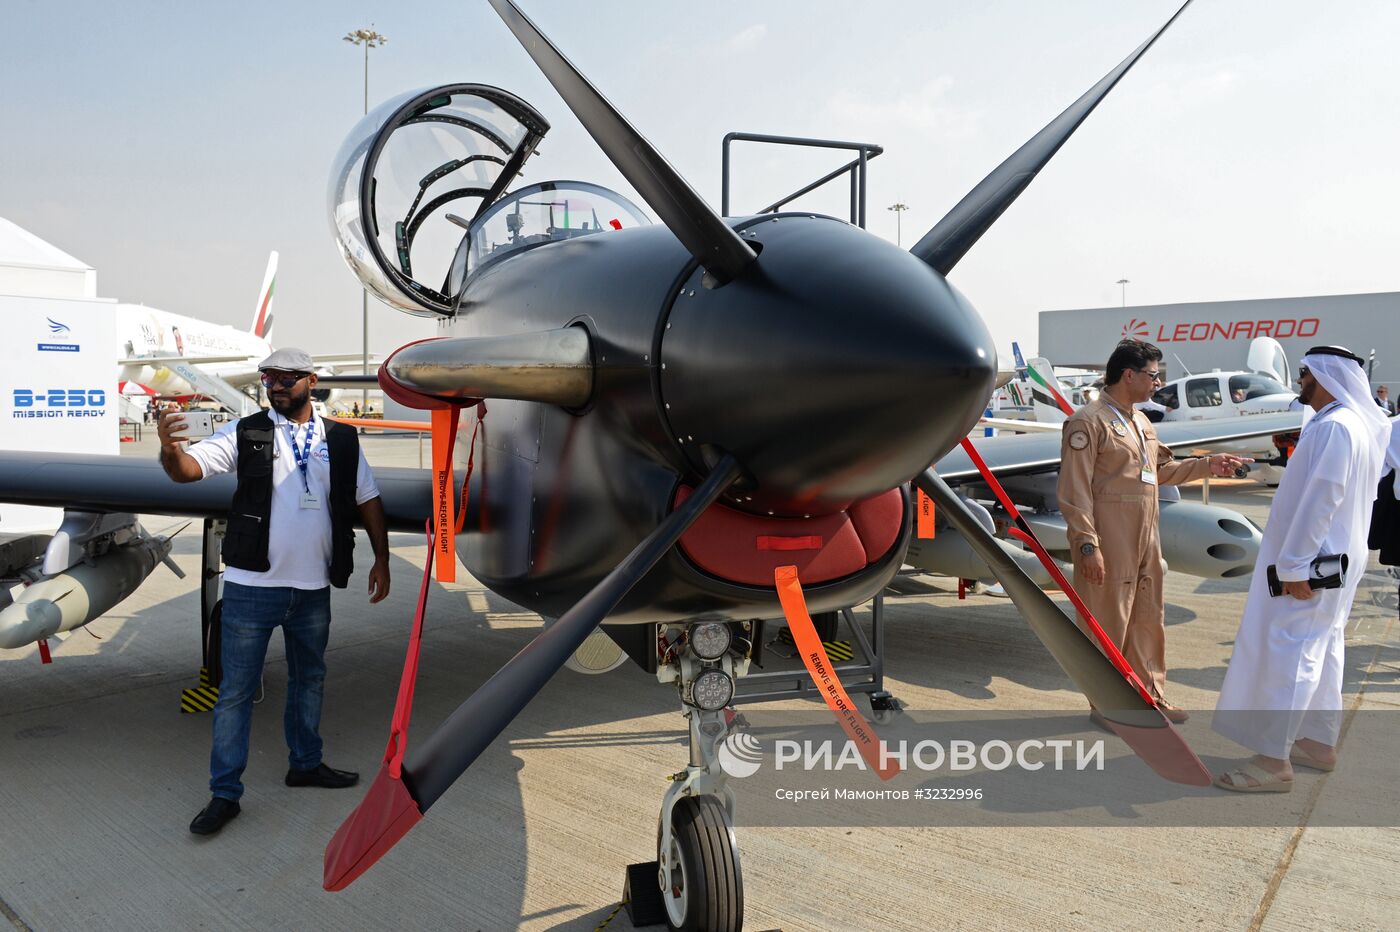 Вице-премьер Д. Рогозин посетил выставку Dubai Airshow 2017